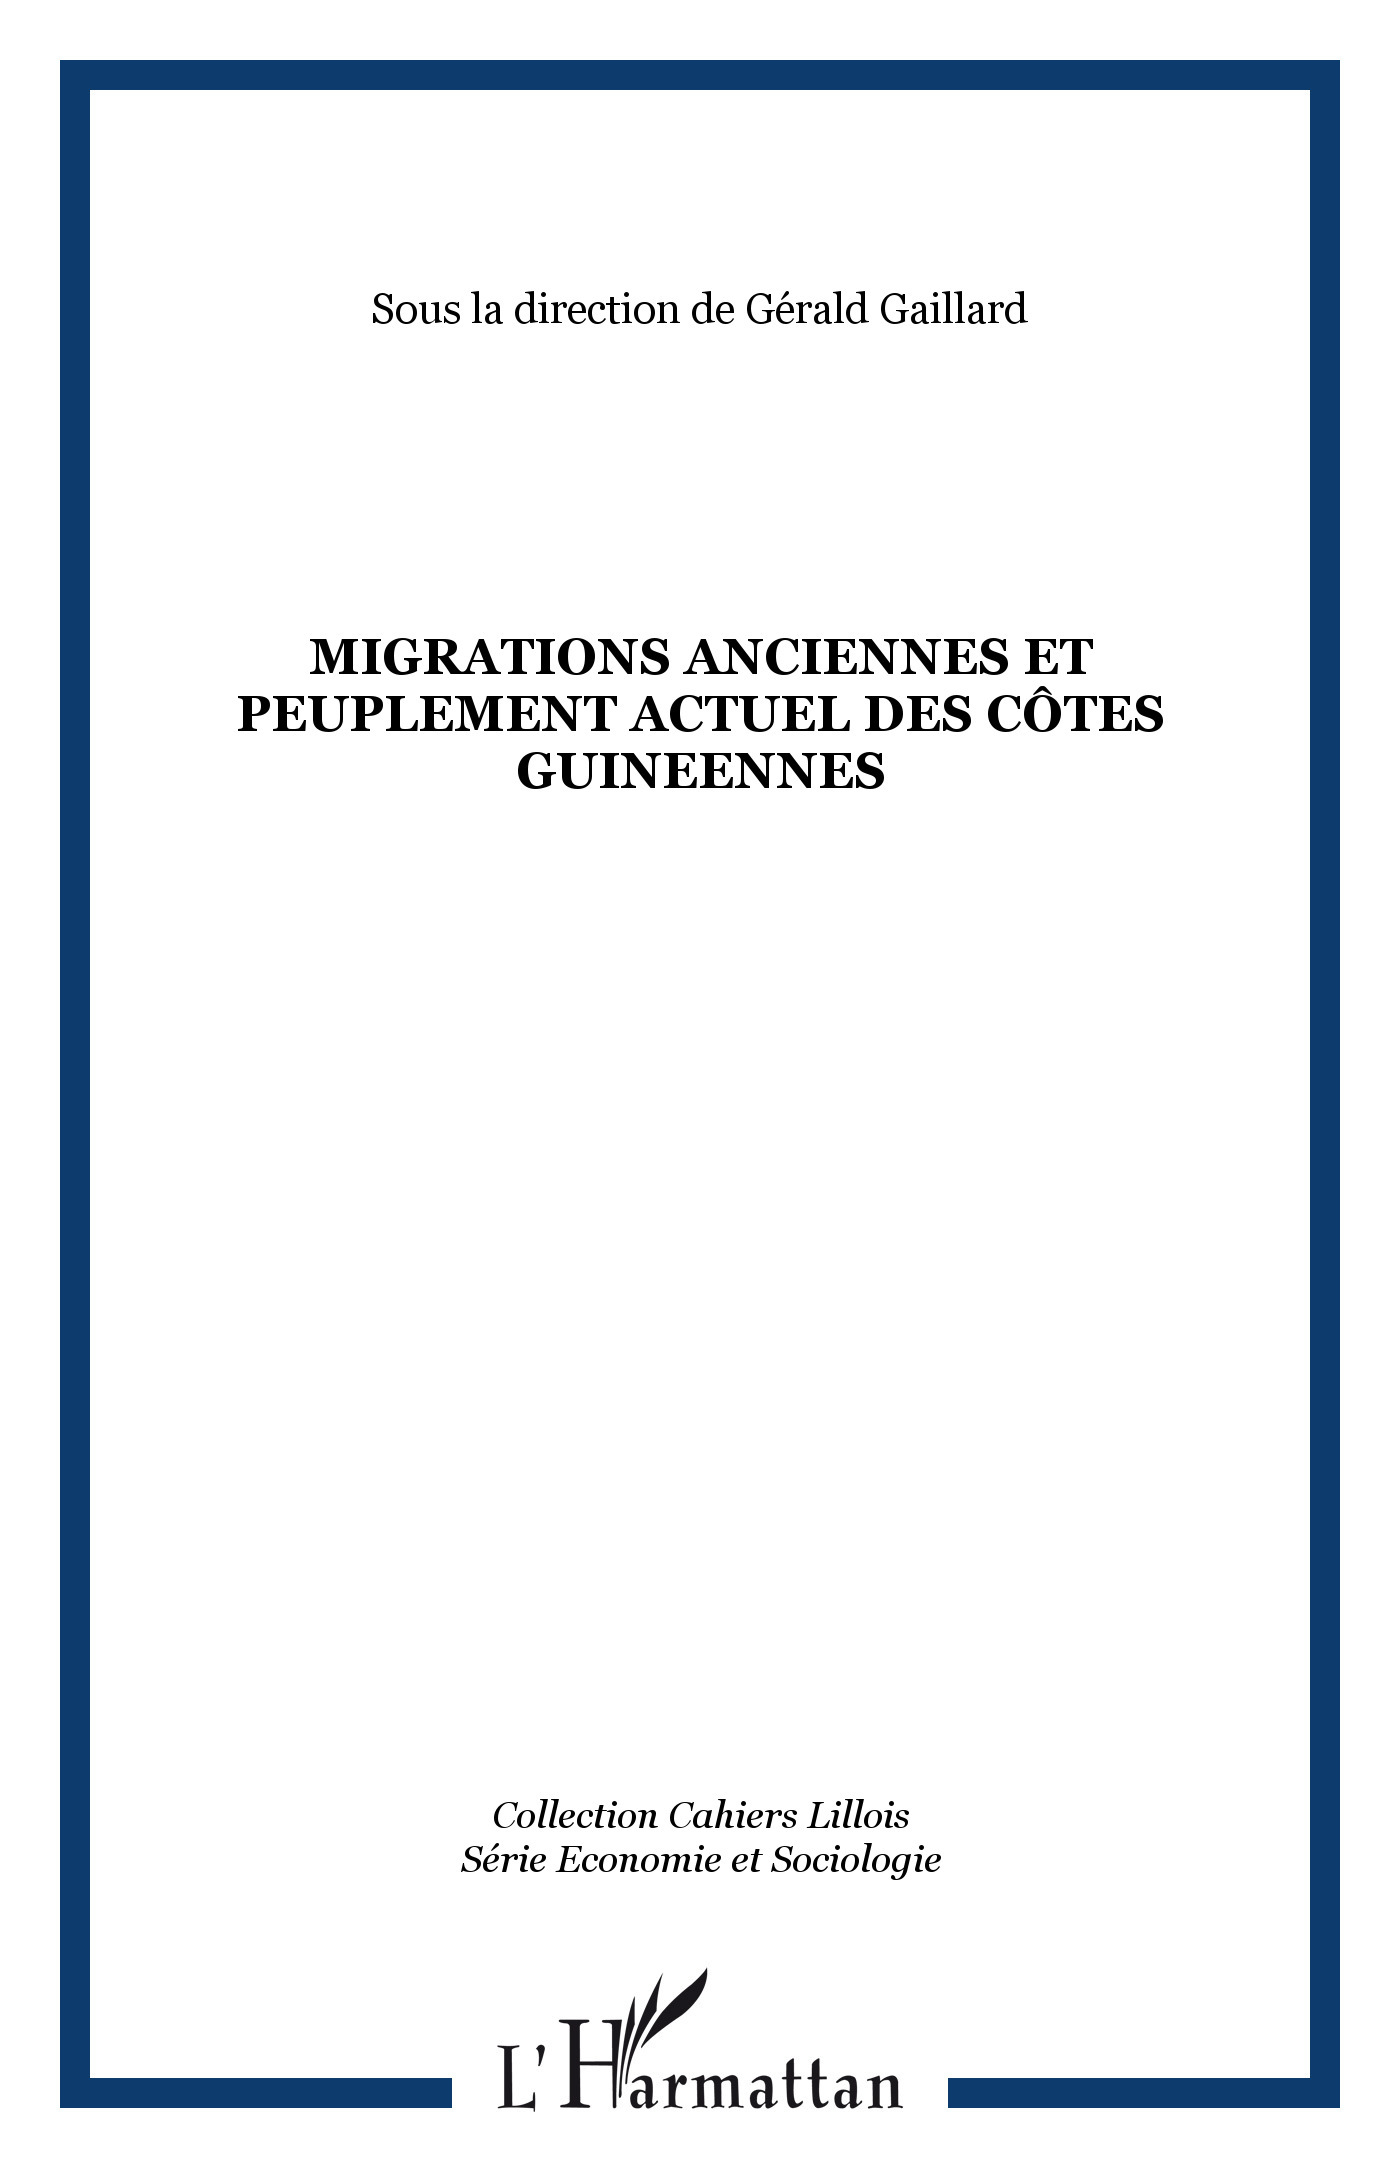 MIGRATIONS ANCIENNES ET PEUPLEMENT ACTUEL DES CÔTES GUINEENNES (9782738498649-front-cover)